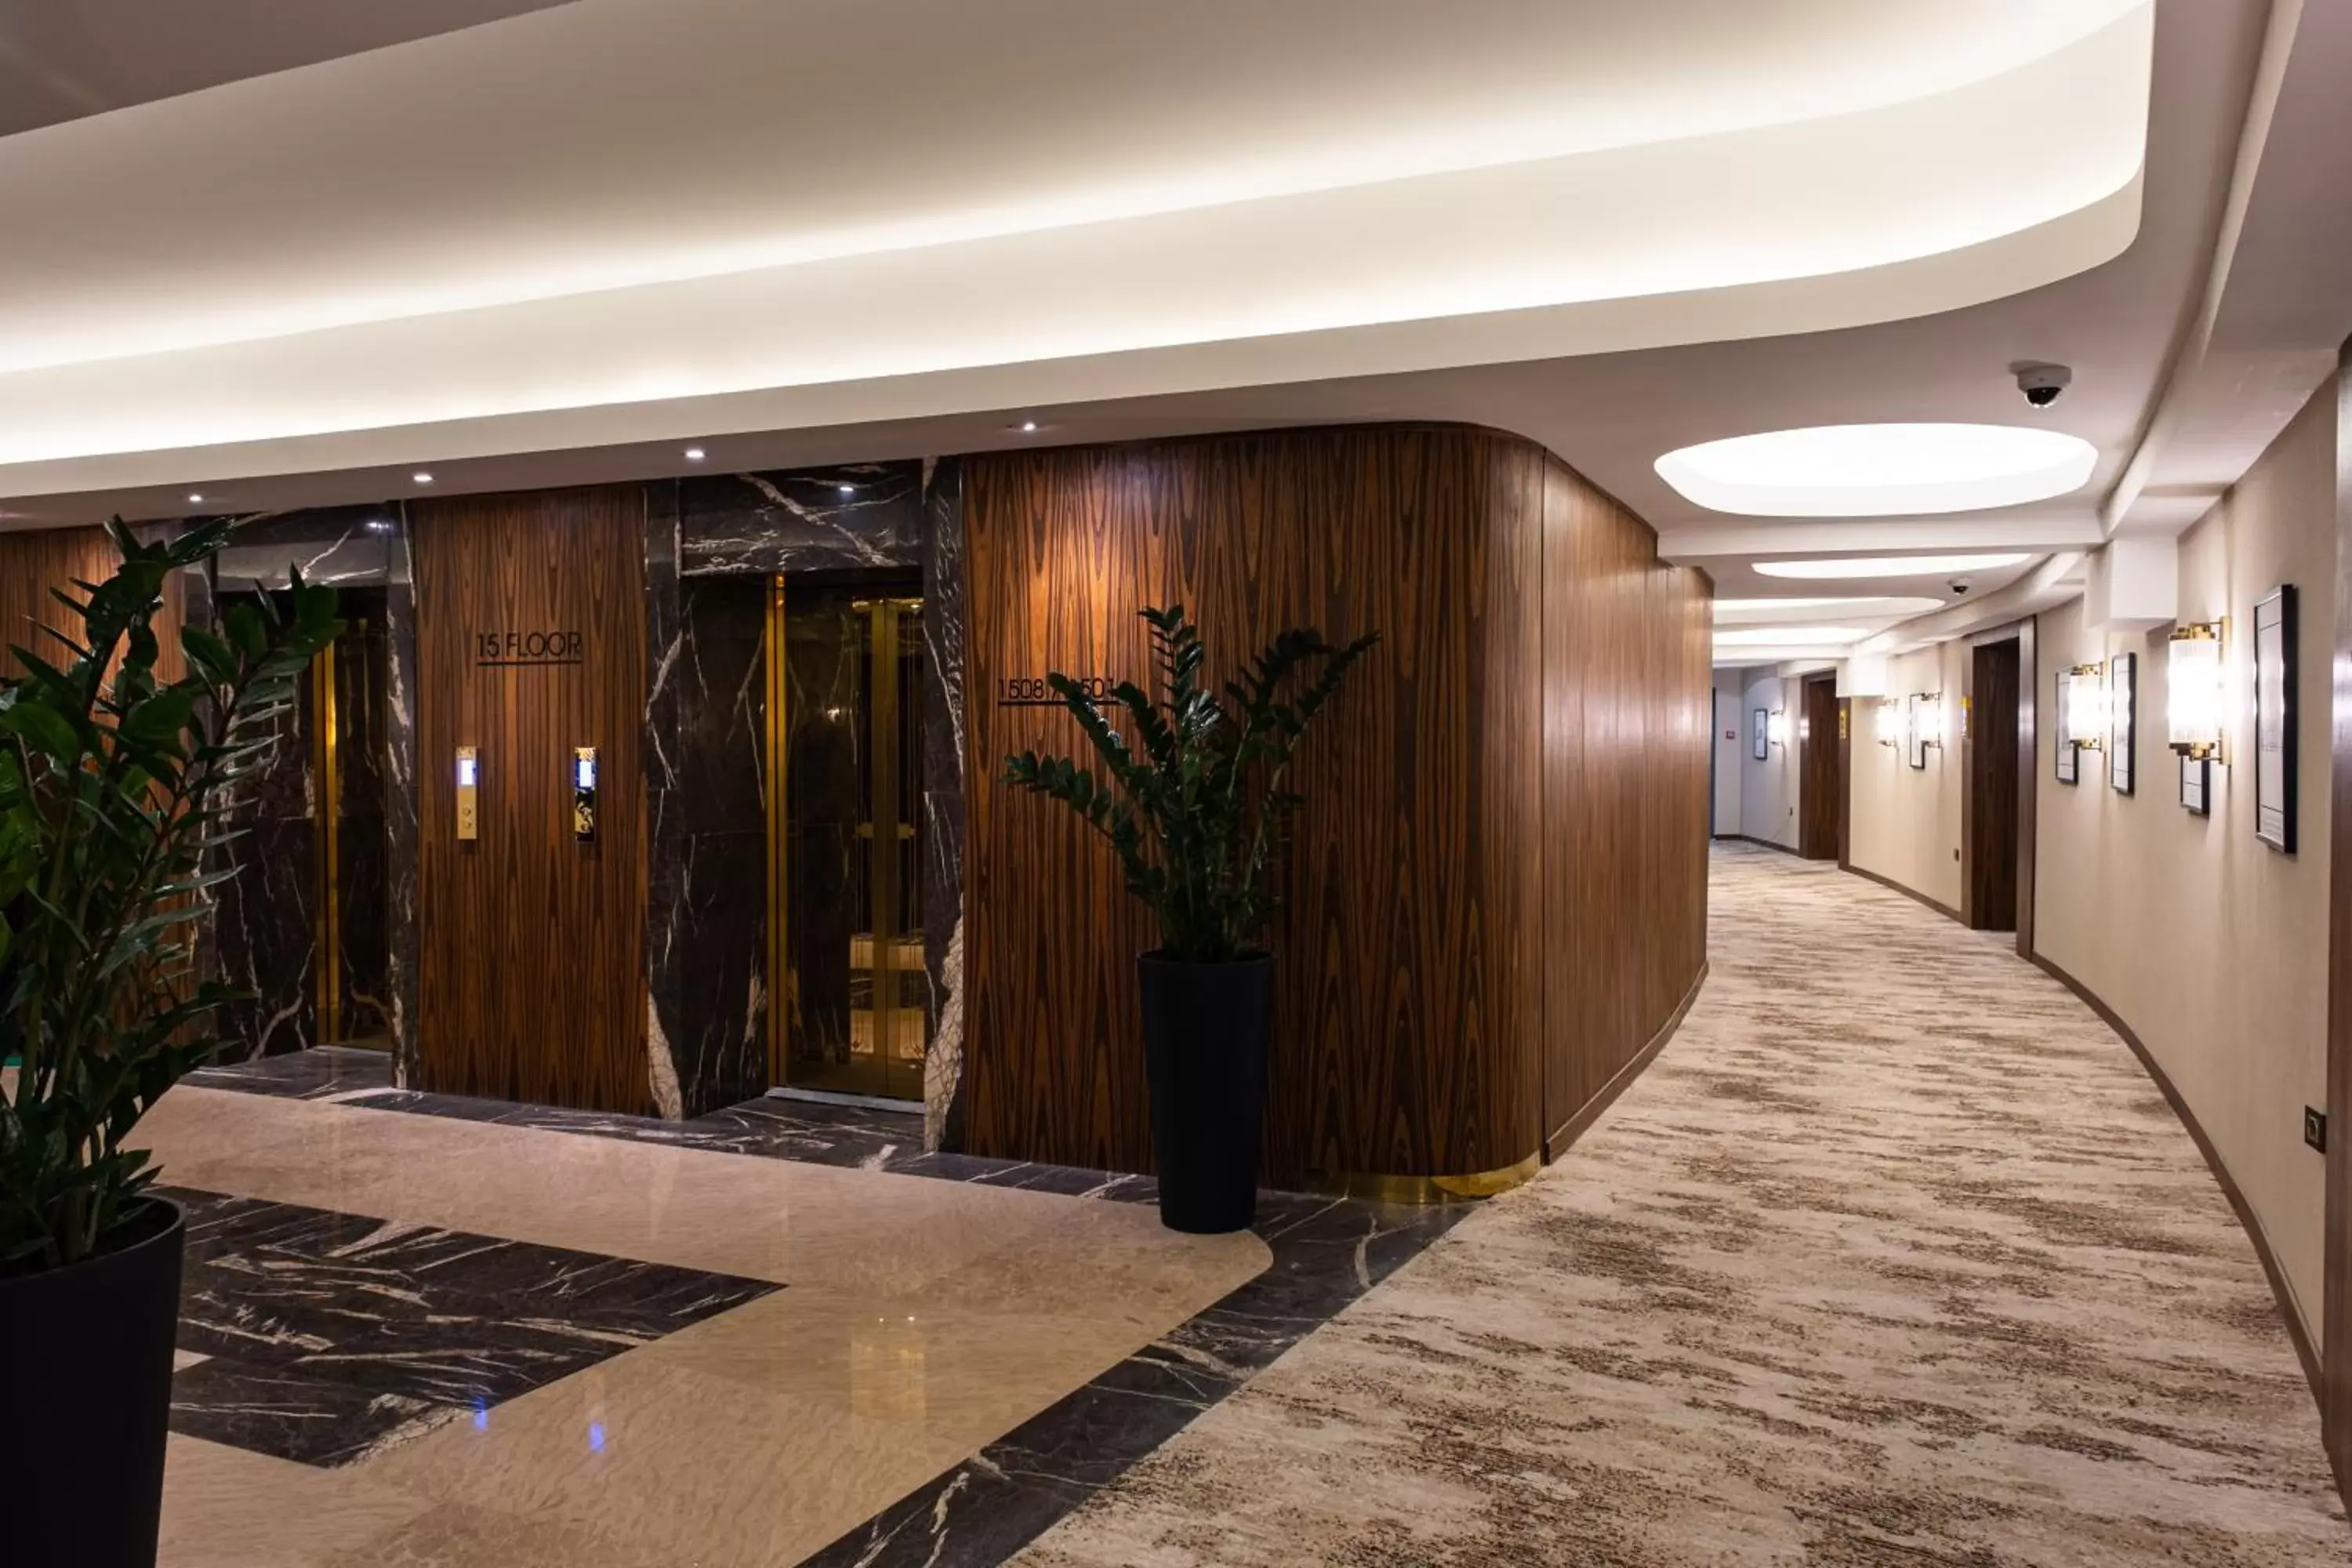 Floor plan in Kazakhstan Hotel